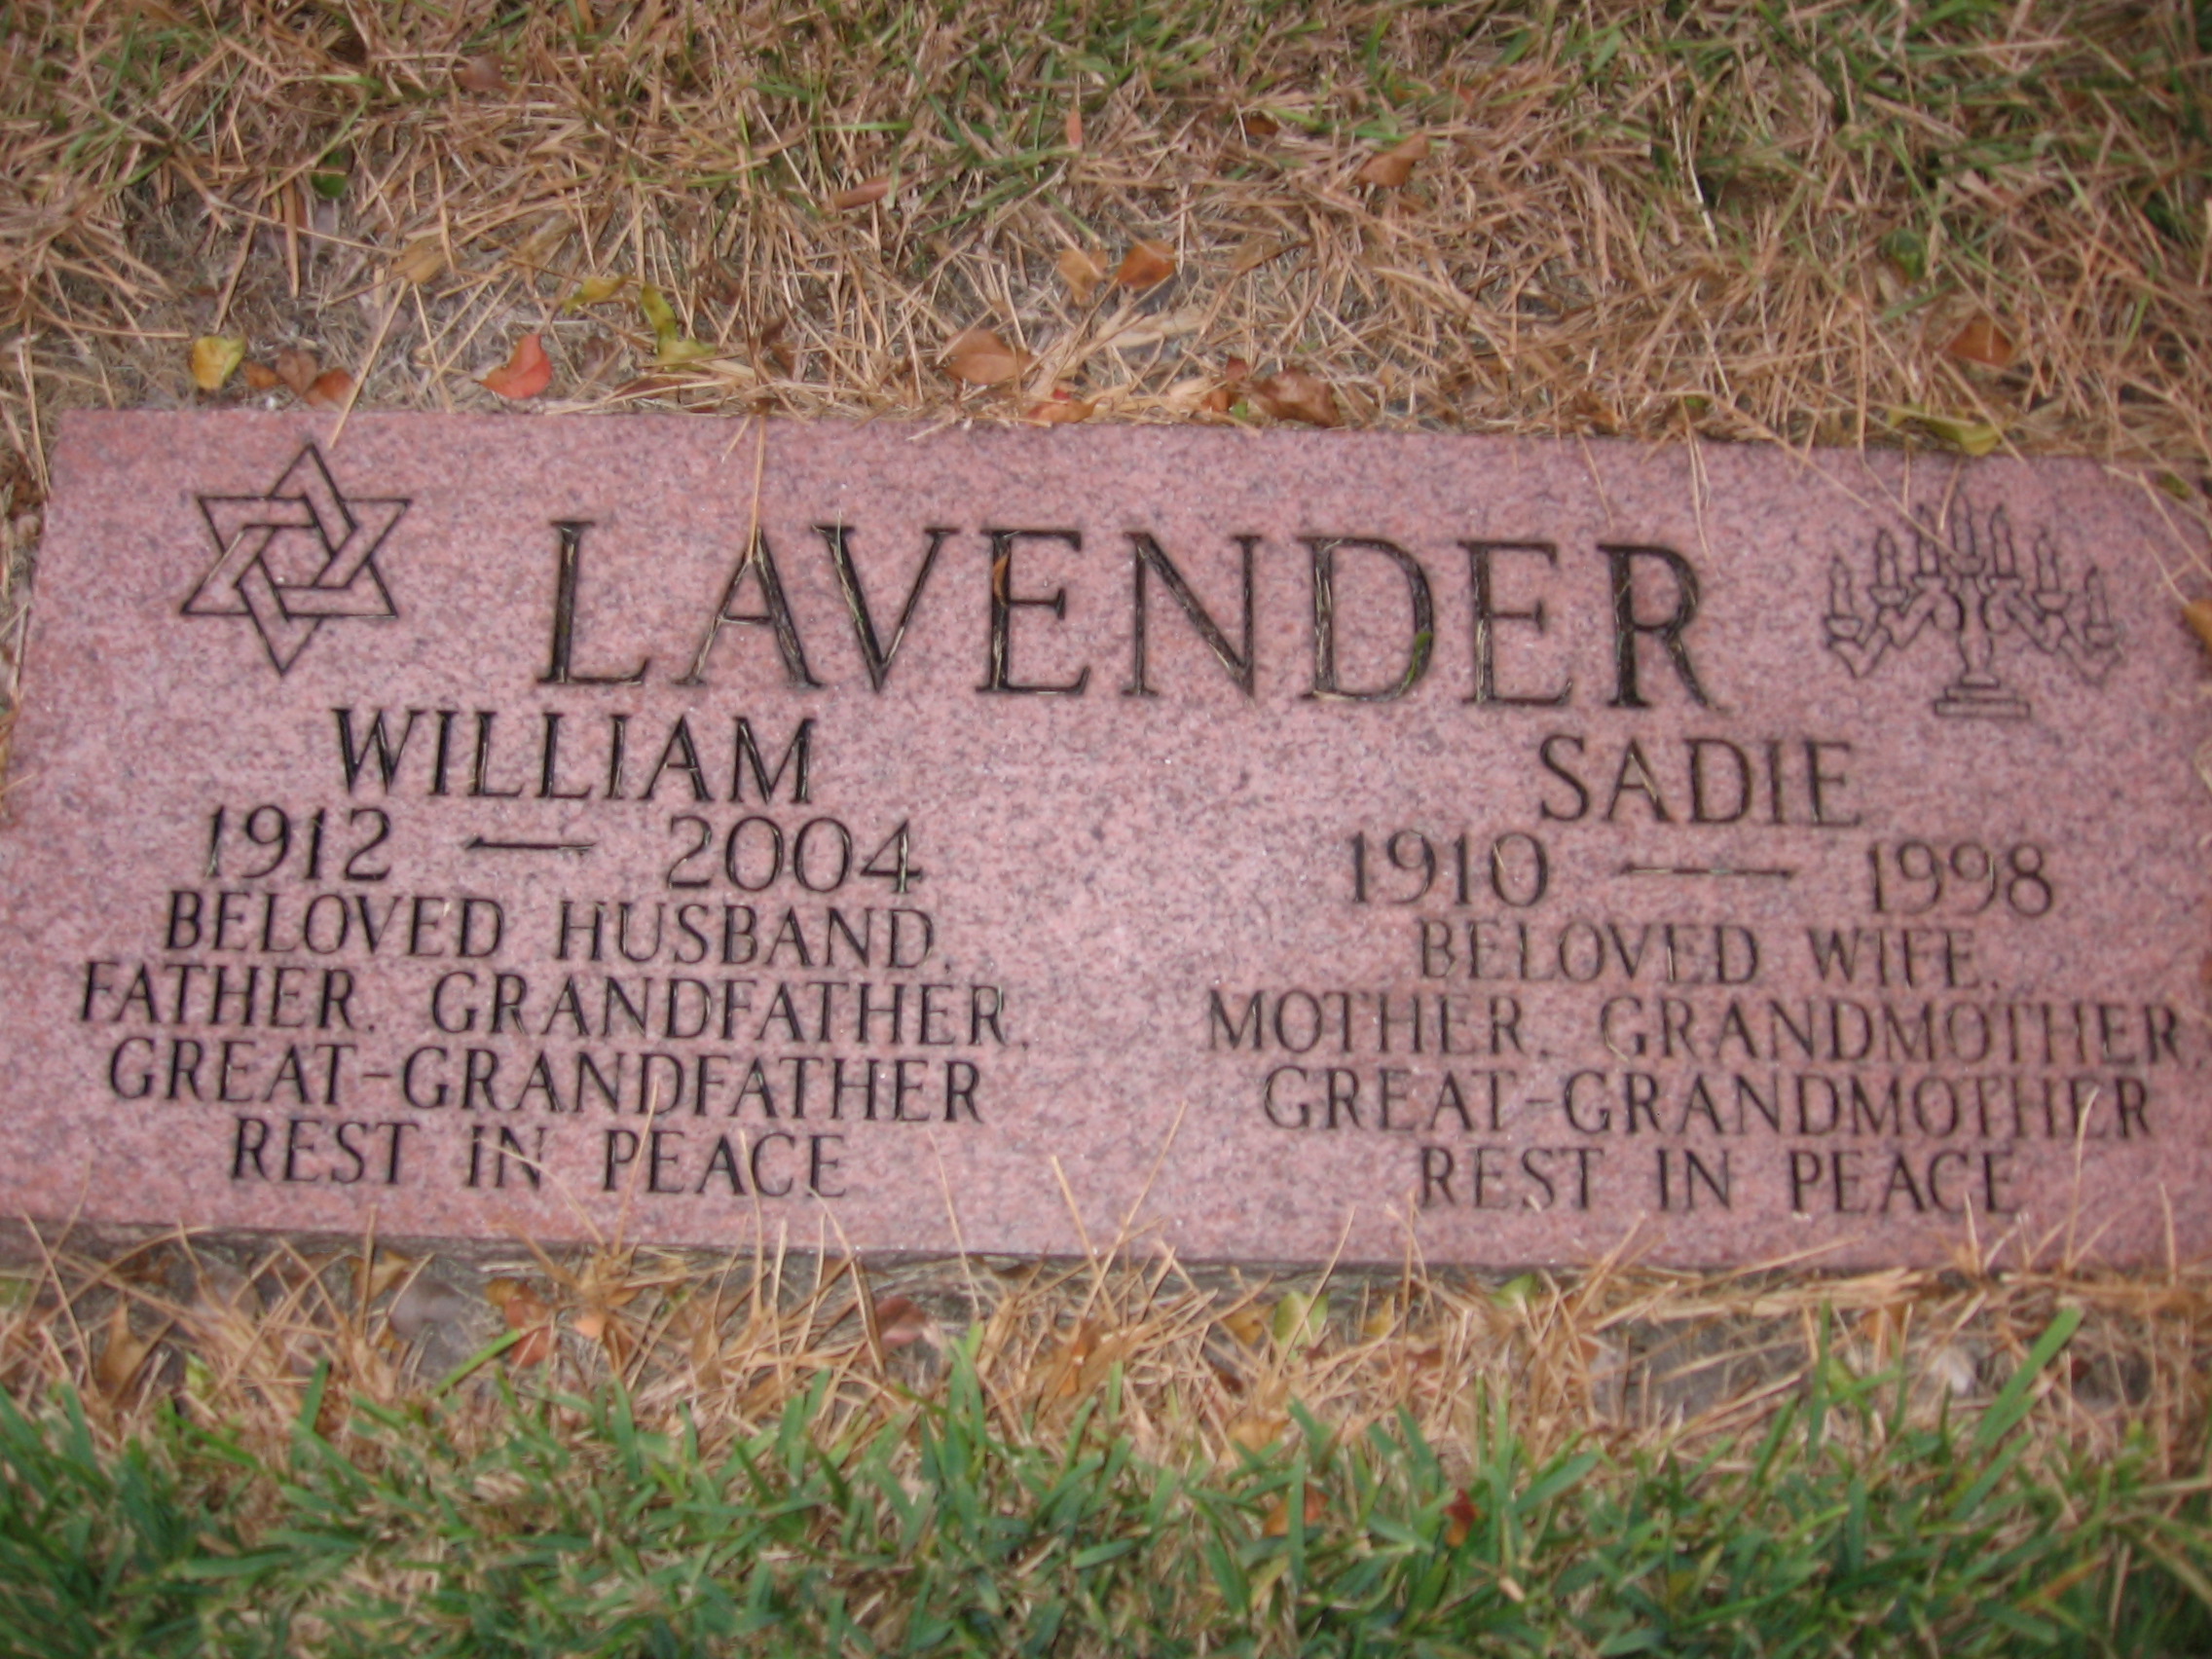 William Lavender